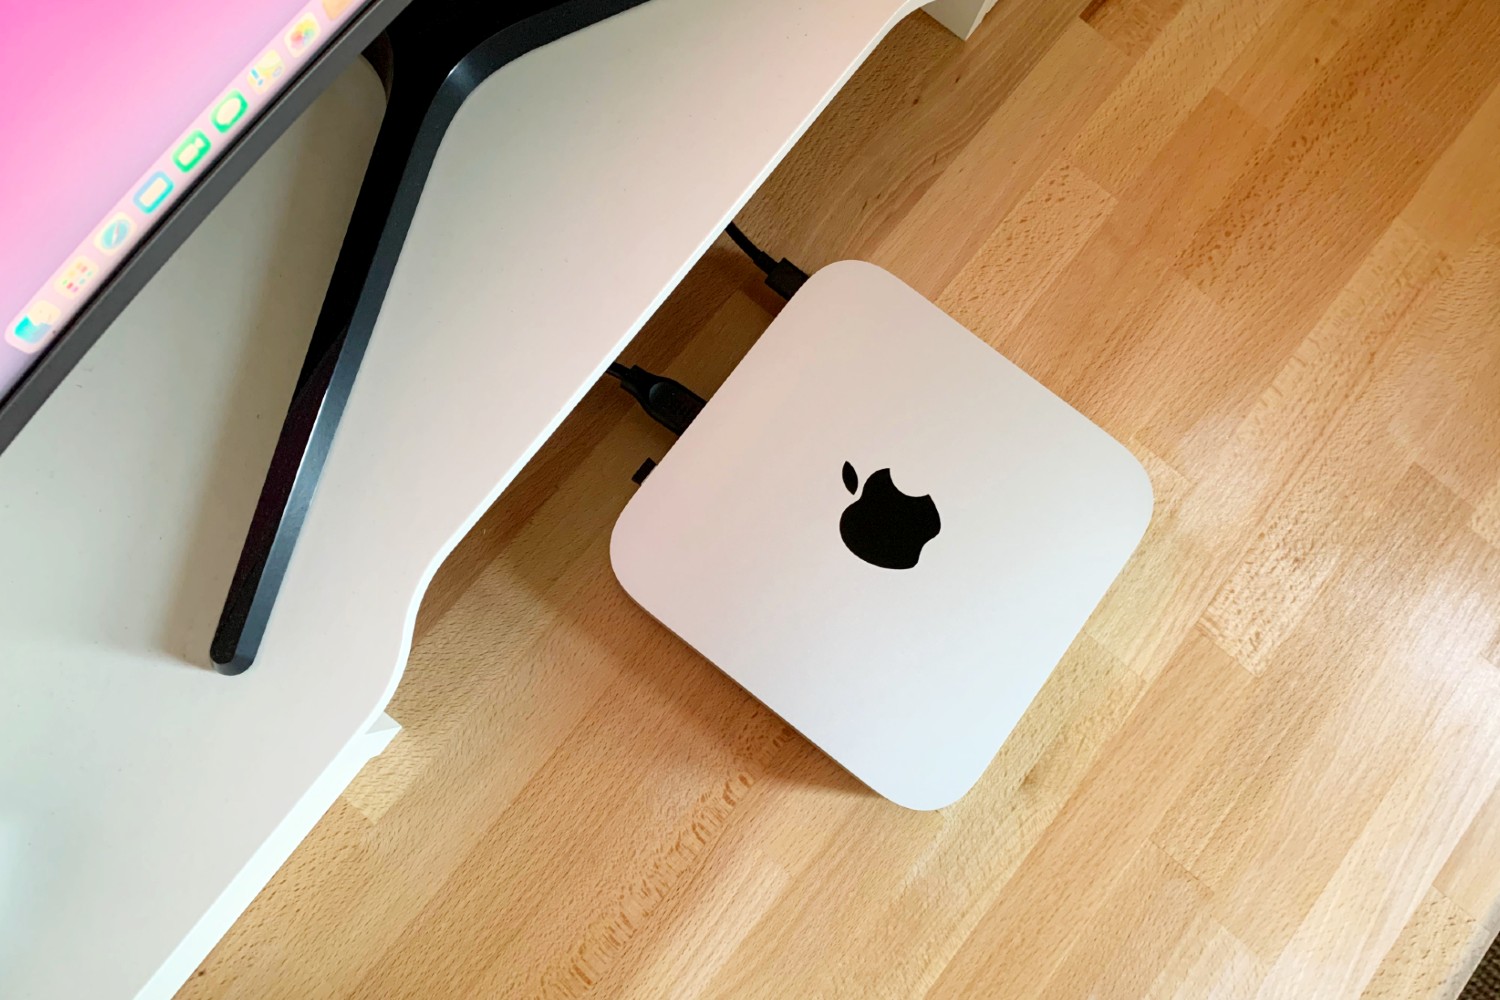 یک Apple Mac Mini M1 روی یک میز قرار دارد.